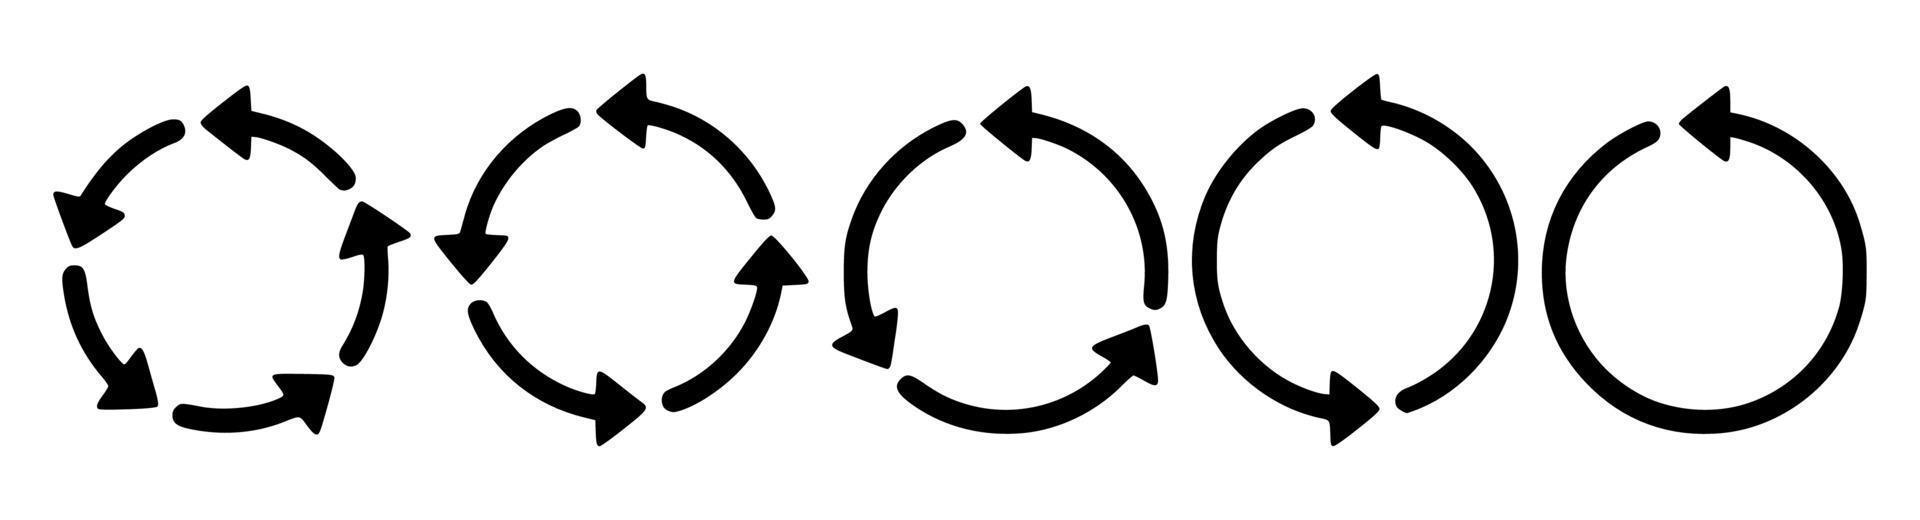 Schwarz-Weiß-Recycling-Symbol vektor